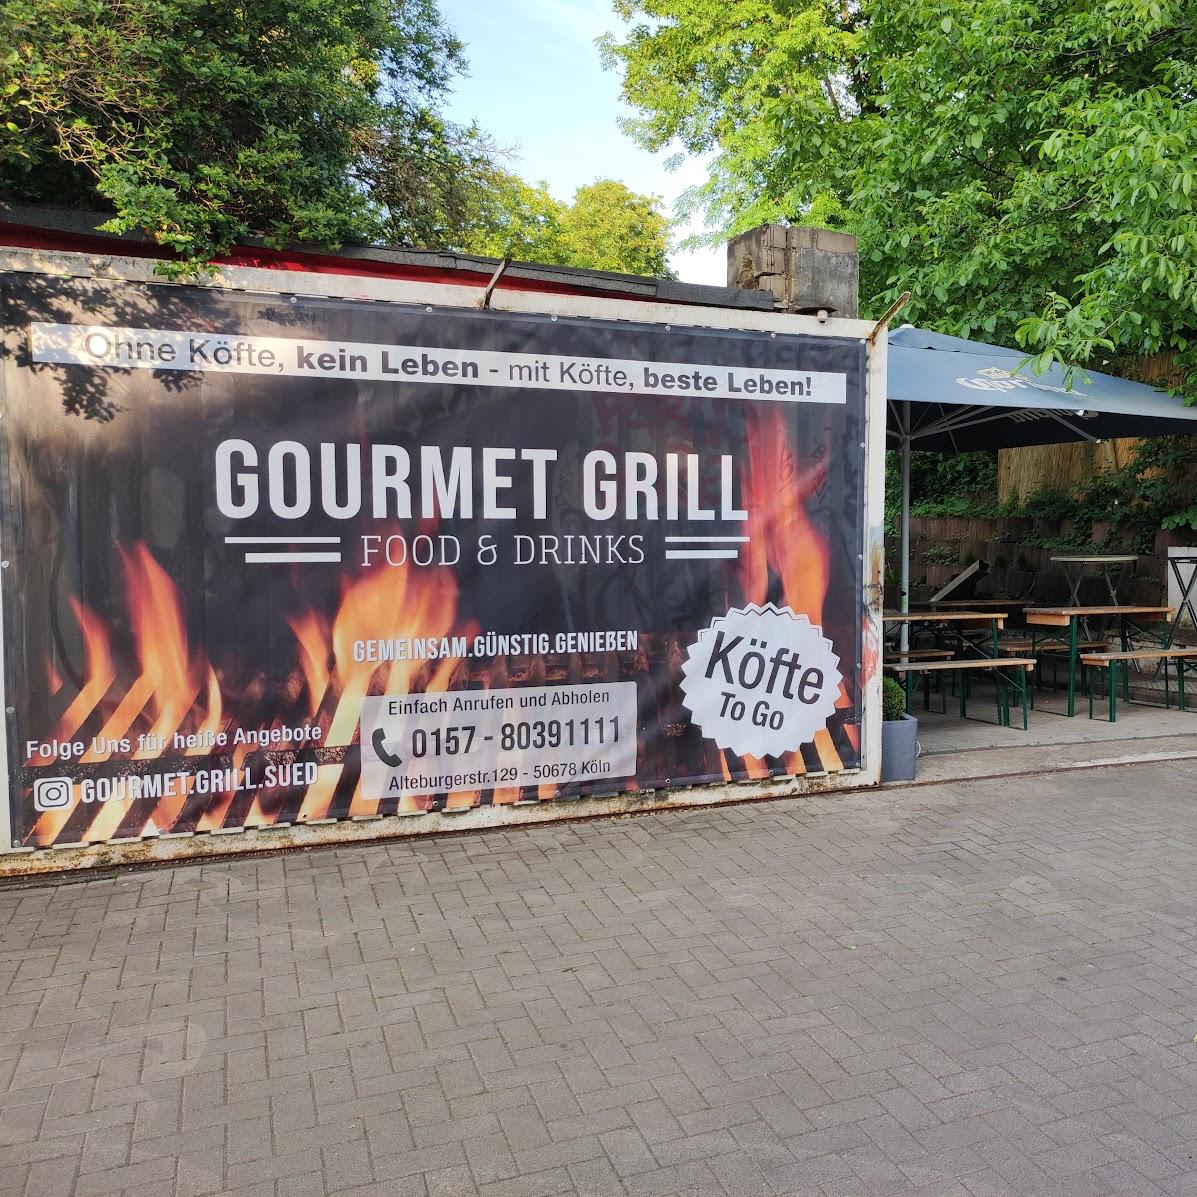 Restaurant "Gourmet Grill" in Köln